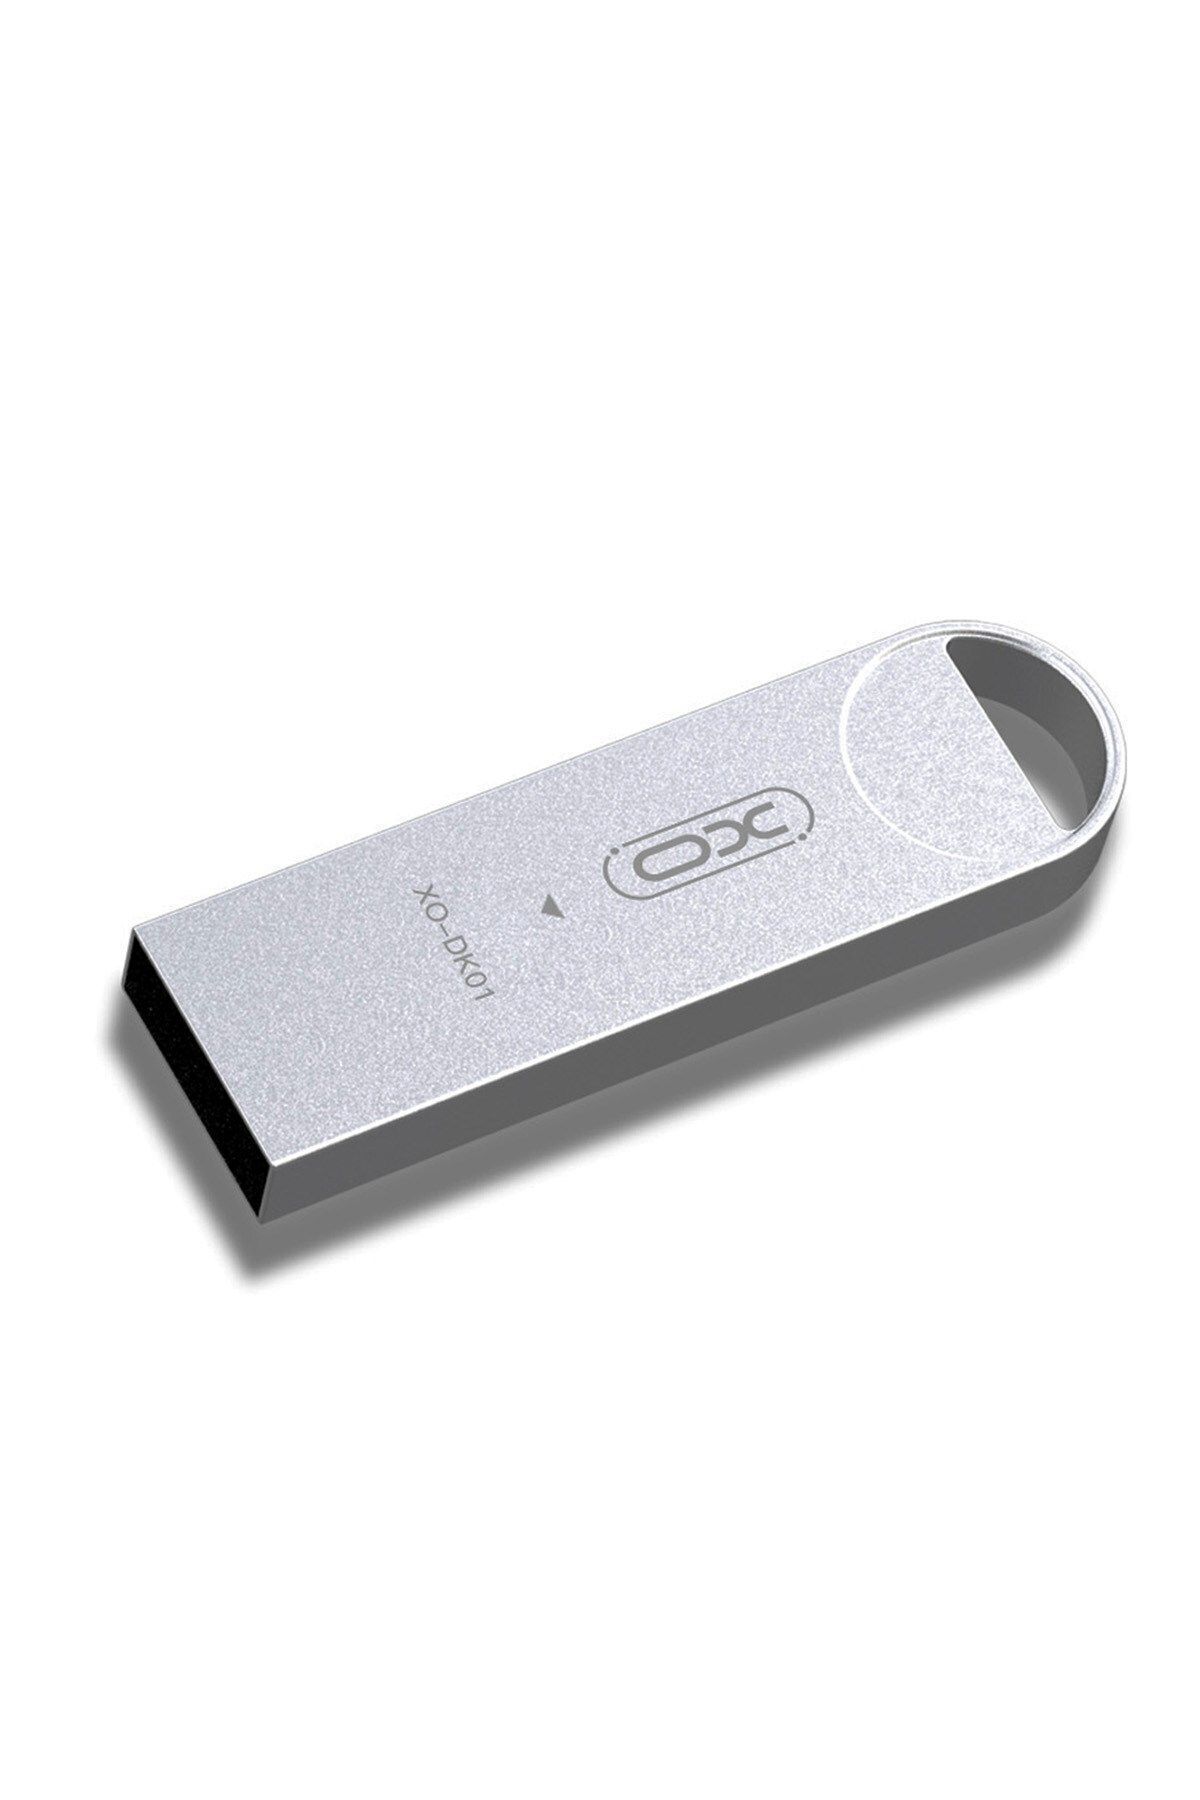 Xo -DK01 32 GB Metal Gövdeli Koruyucu Tasarım USB Bellek Flash Disk